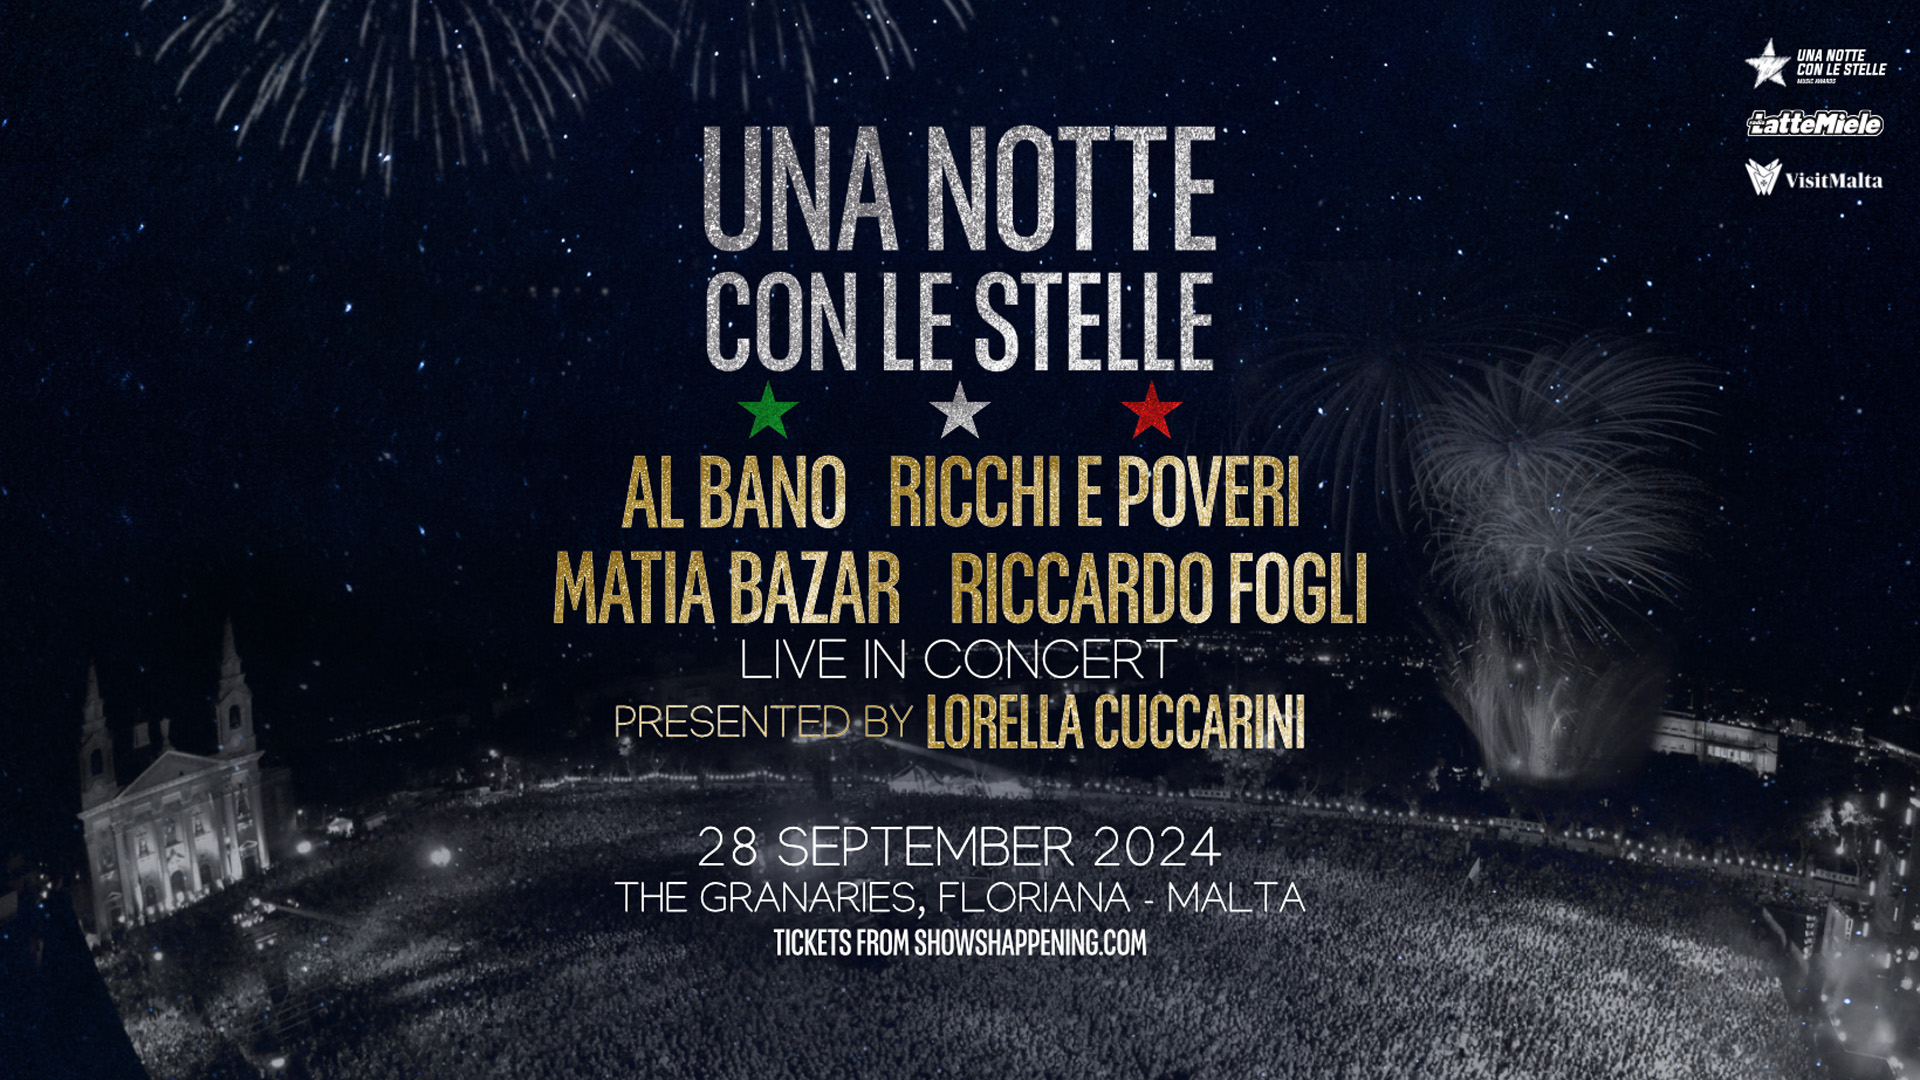 Al Bano, Ricchi e Poveri & More Announced for Massive Fosos Concert